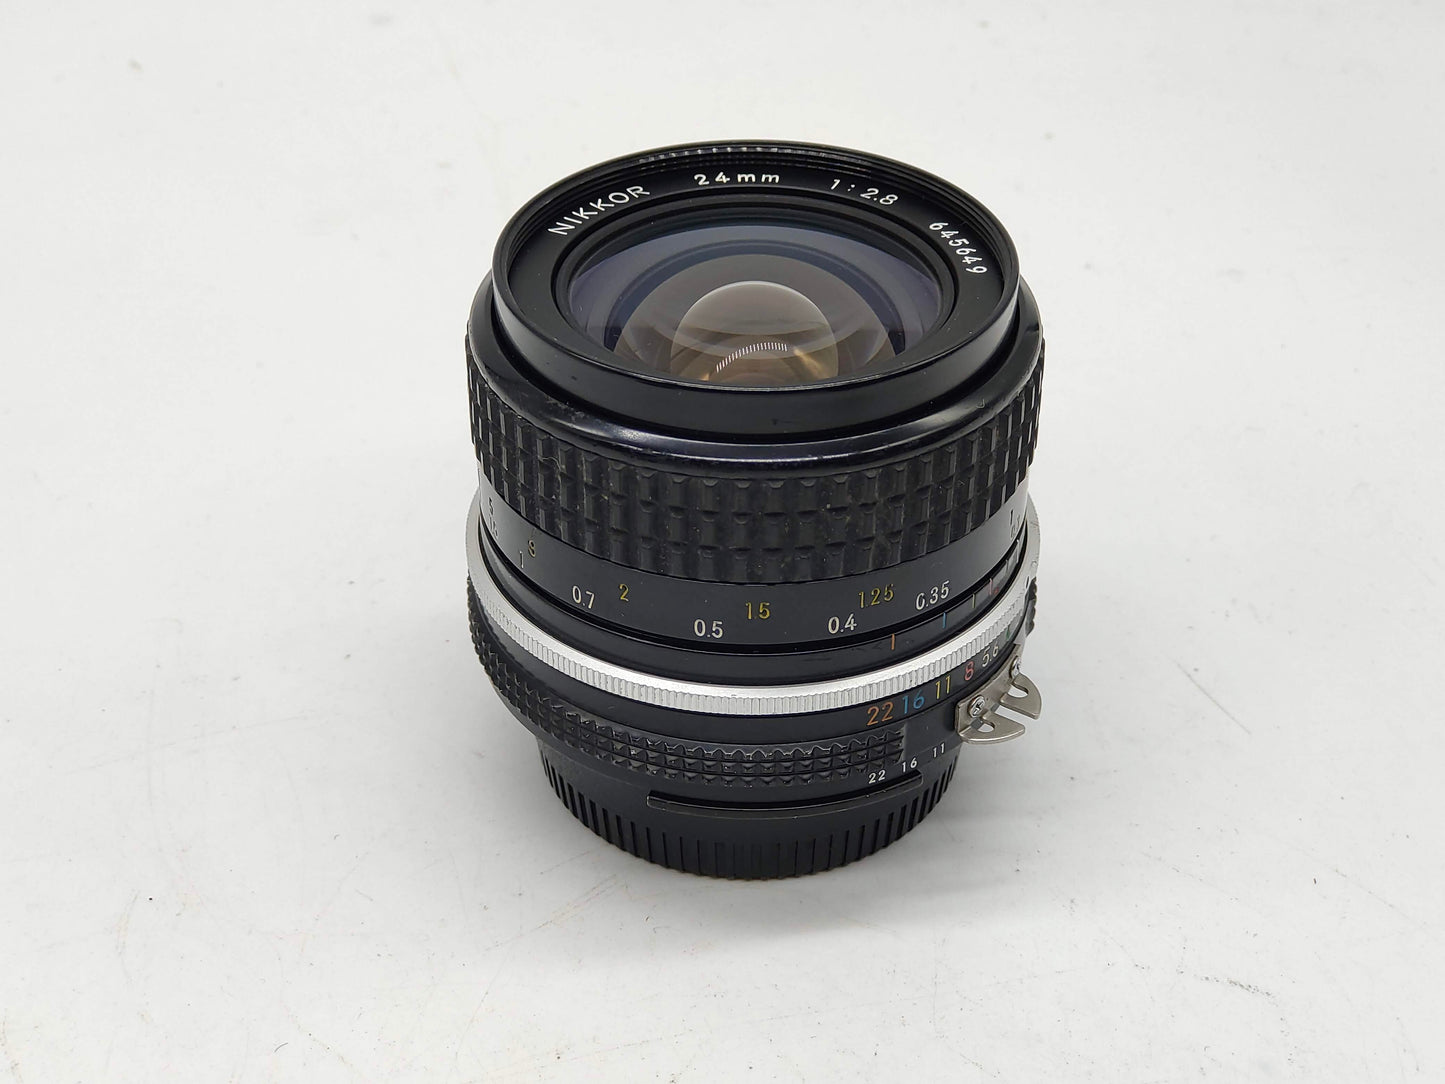 Nikon 24mm f/2.8 Nikkor AI lens